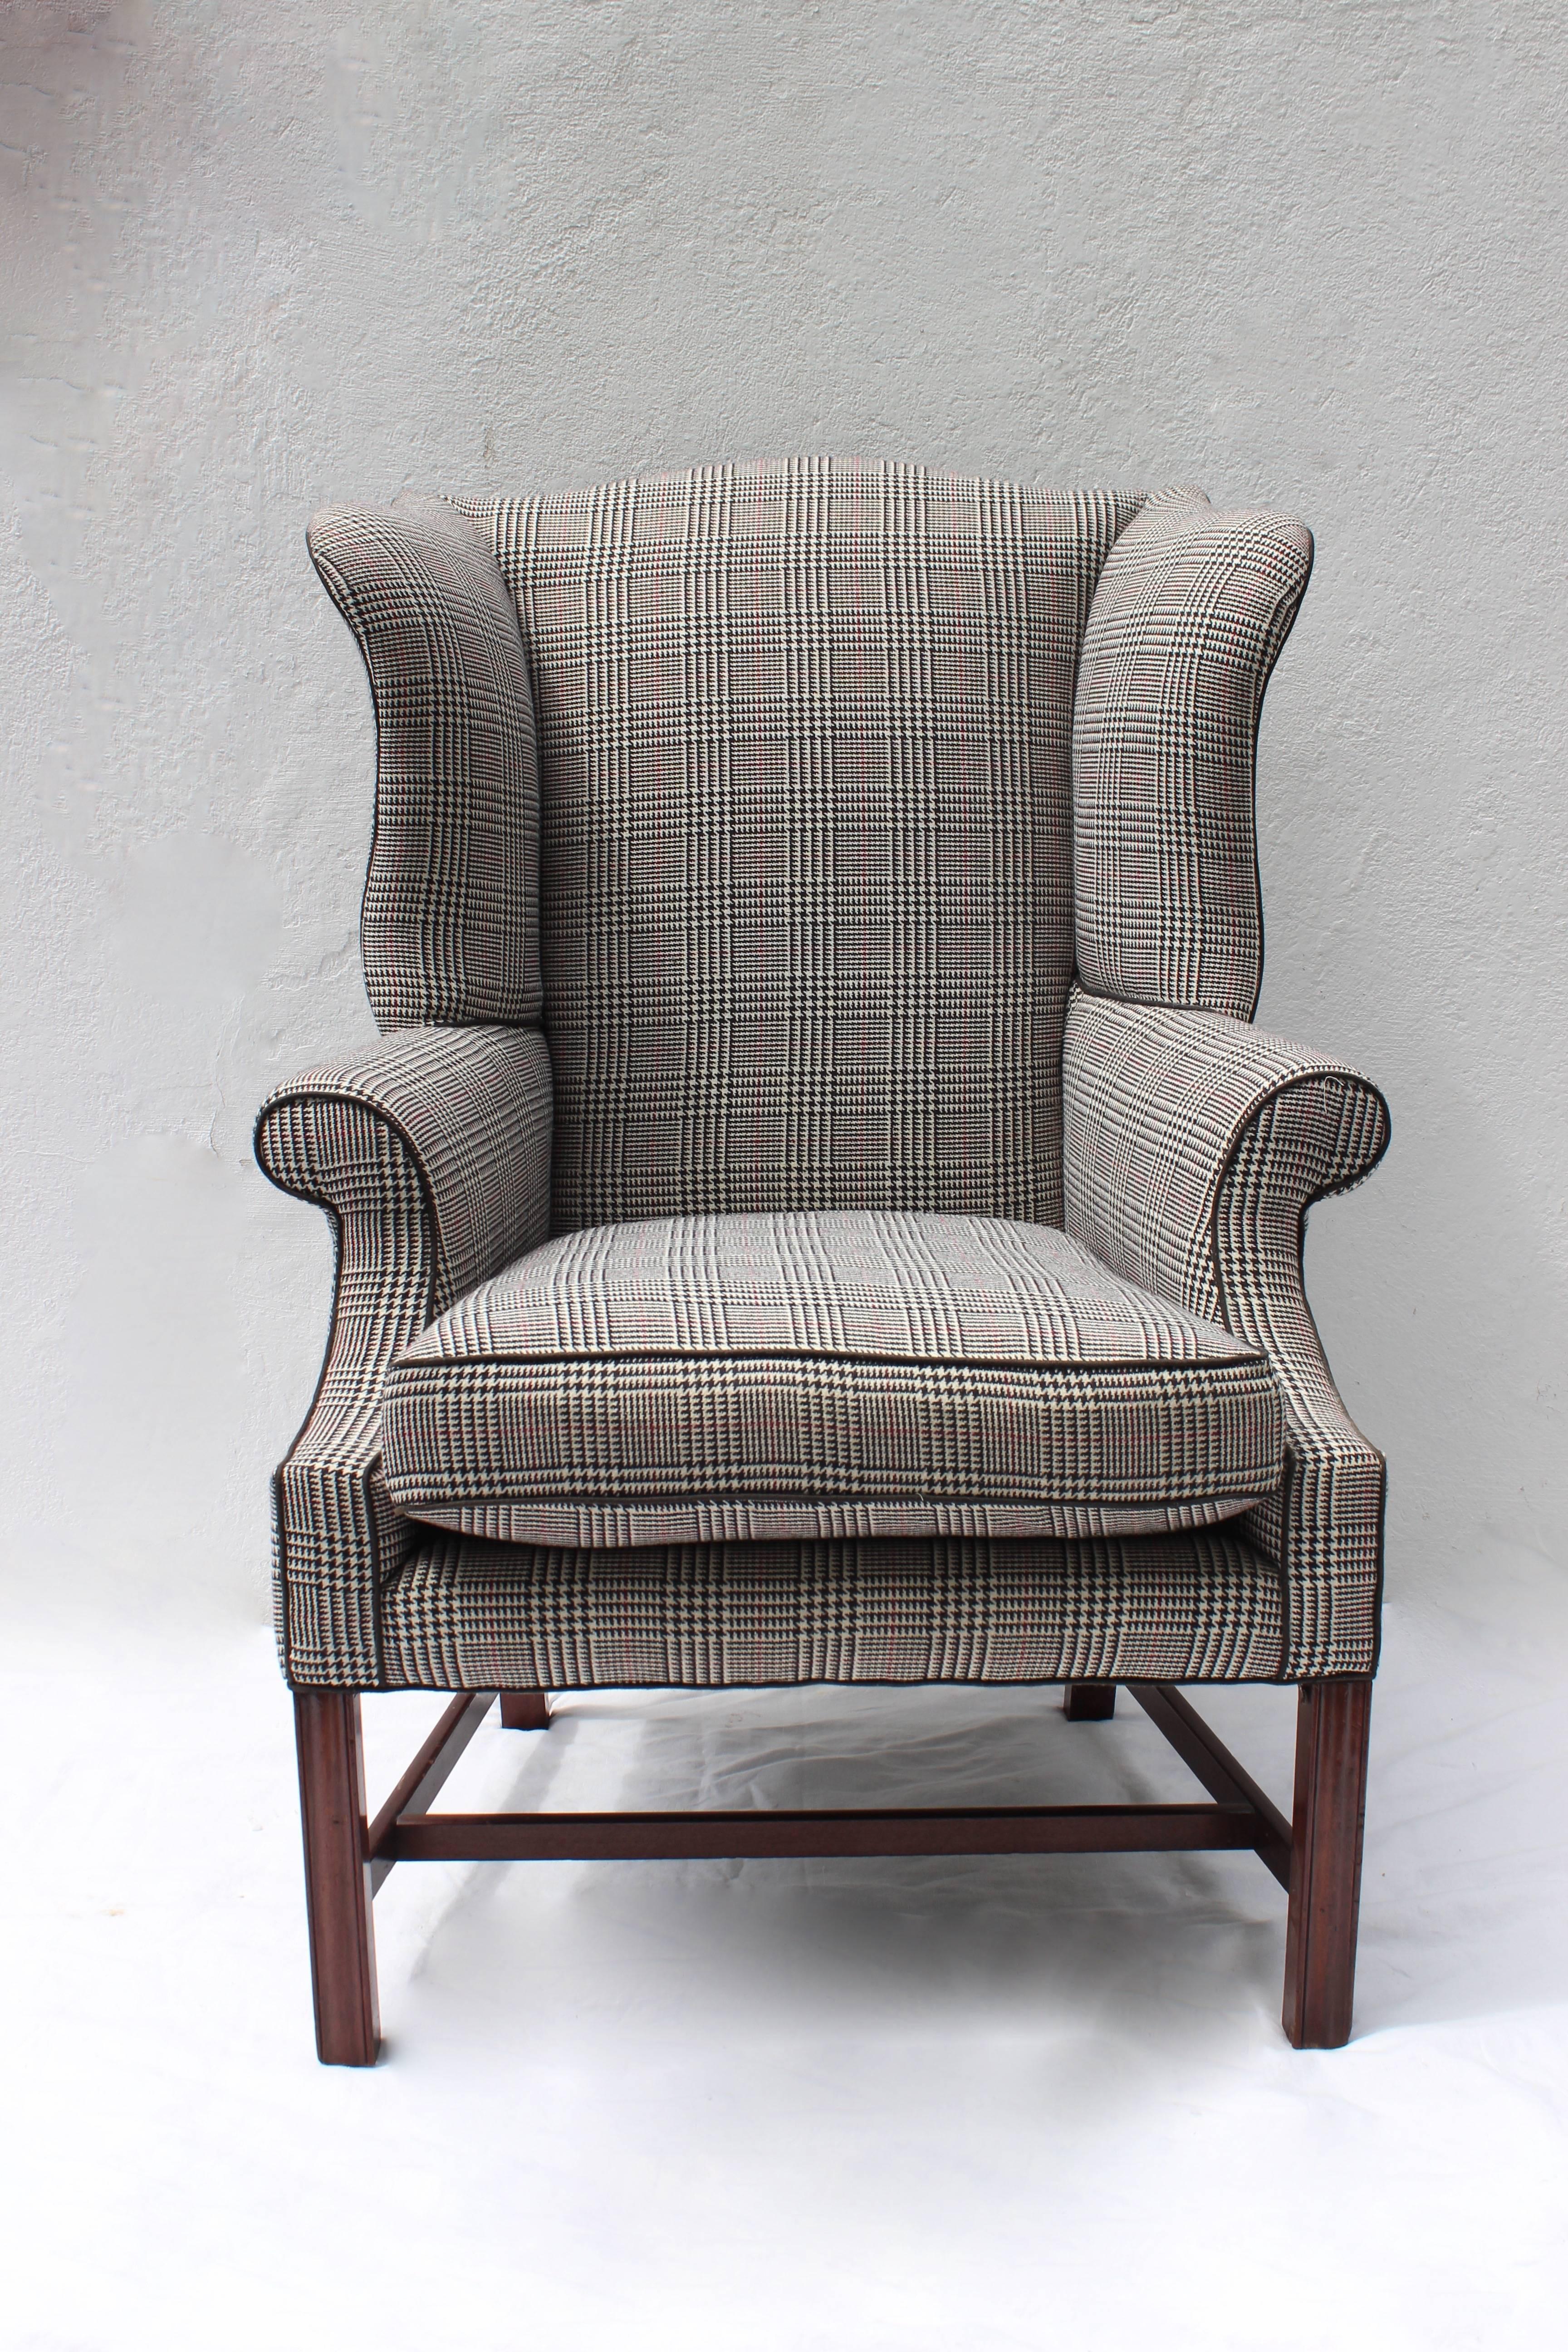 Grande chaise à oreilles Chippendale américaine de la fin du XVIIIe siècle. 

Nouvellement tapissé en laine à carreaux.